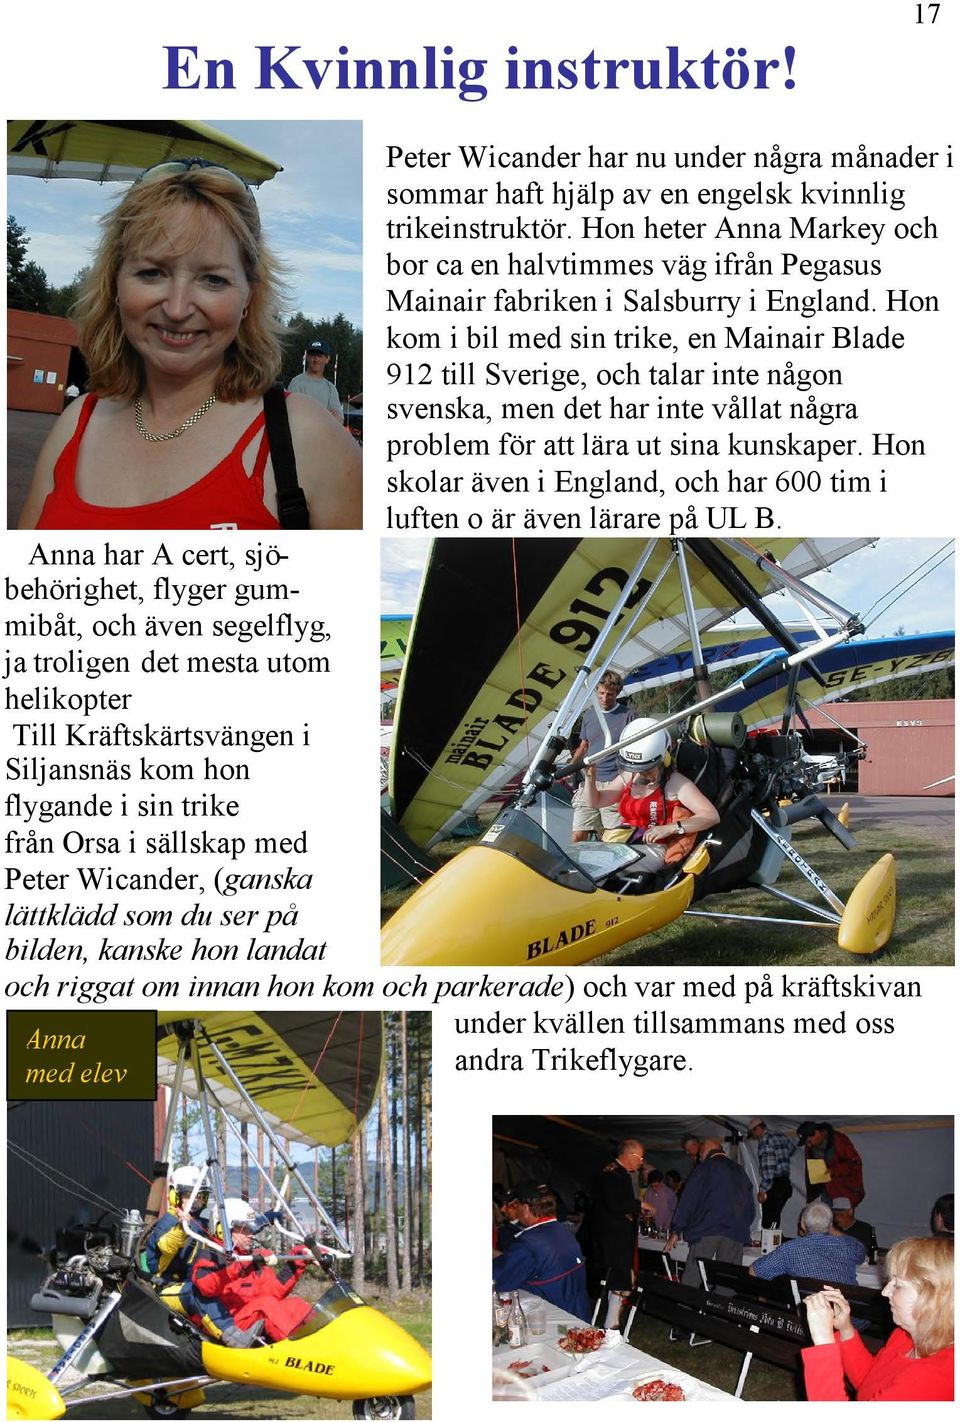 Hon kom i bil med sin trike, en Mainair Blade 912 till Sverige, och talar inte någon svenska, men det har inte vållat några problem för att lära ut sina kunskaper.